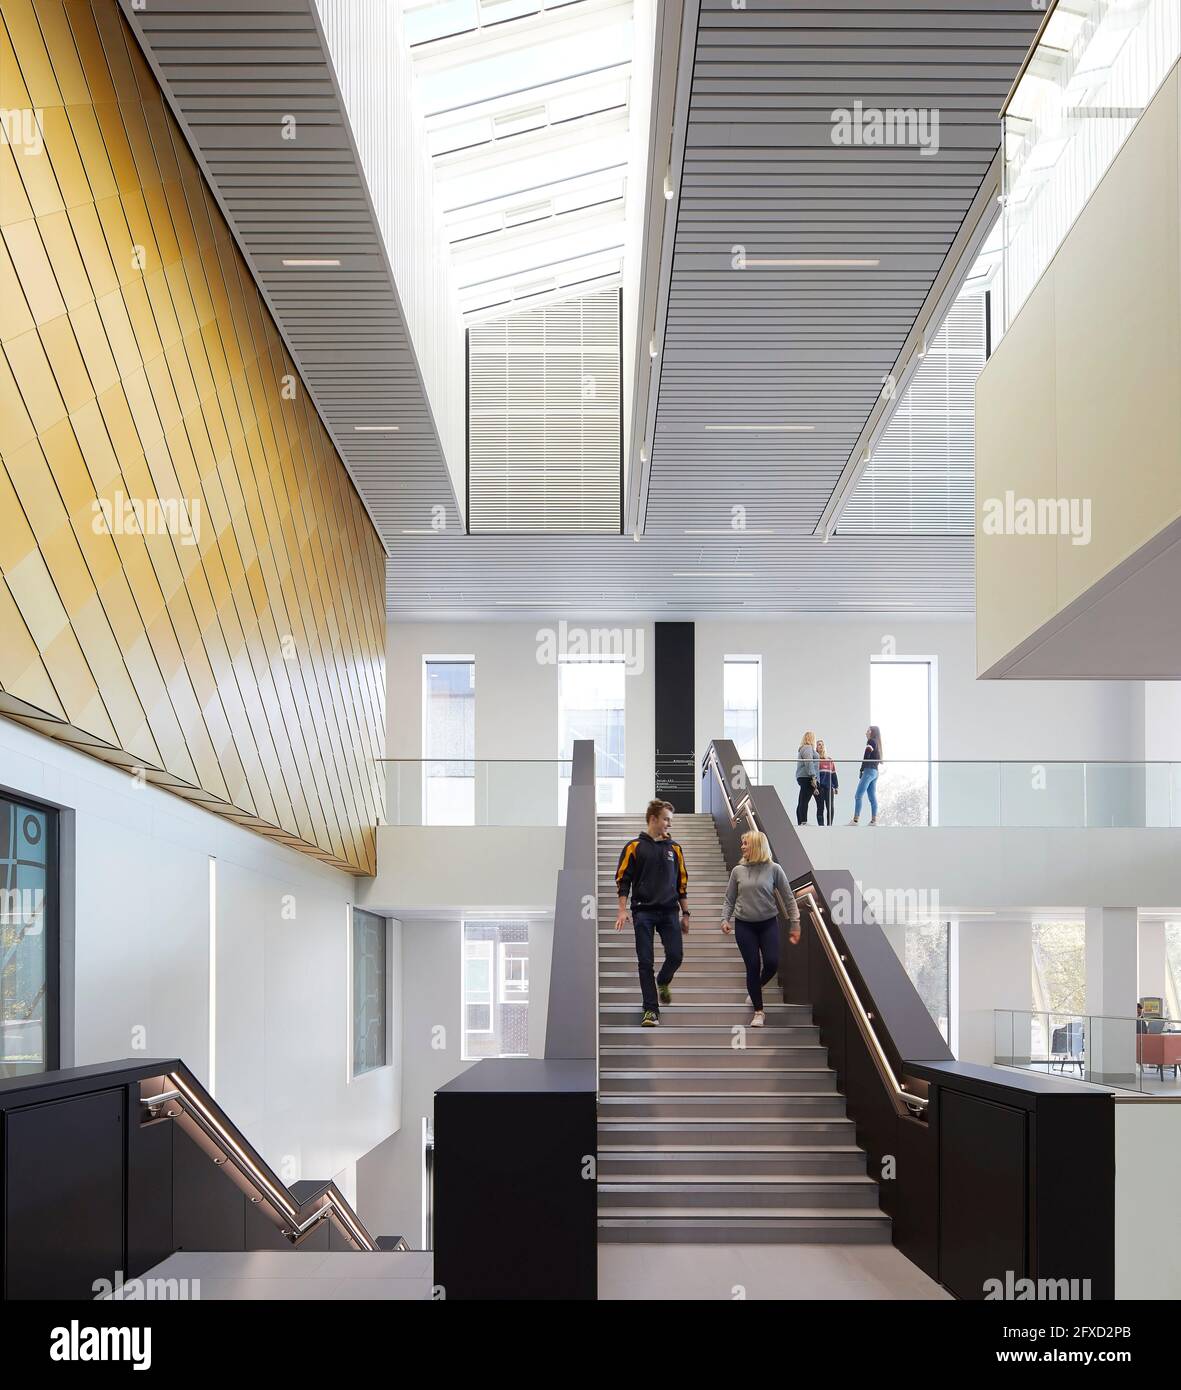 Treppe unter dem Dachfenster. University of Birmingham, Collaborative Teaching Laboratory, Birmingham, Großbritannien. Architekt: Sheppard Robson, 2018. Stockfoto